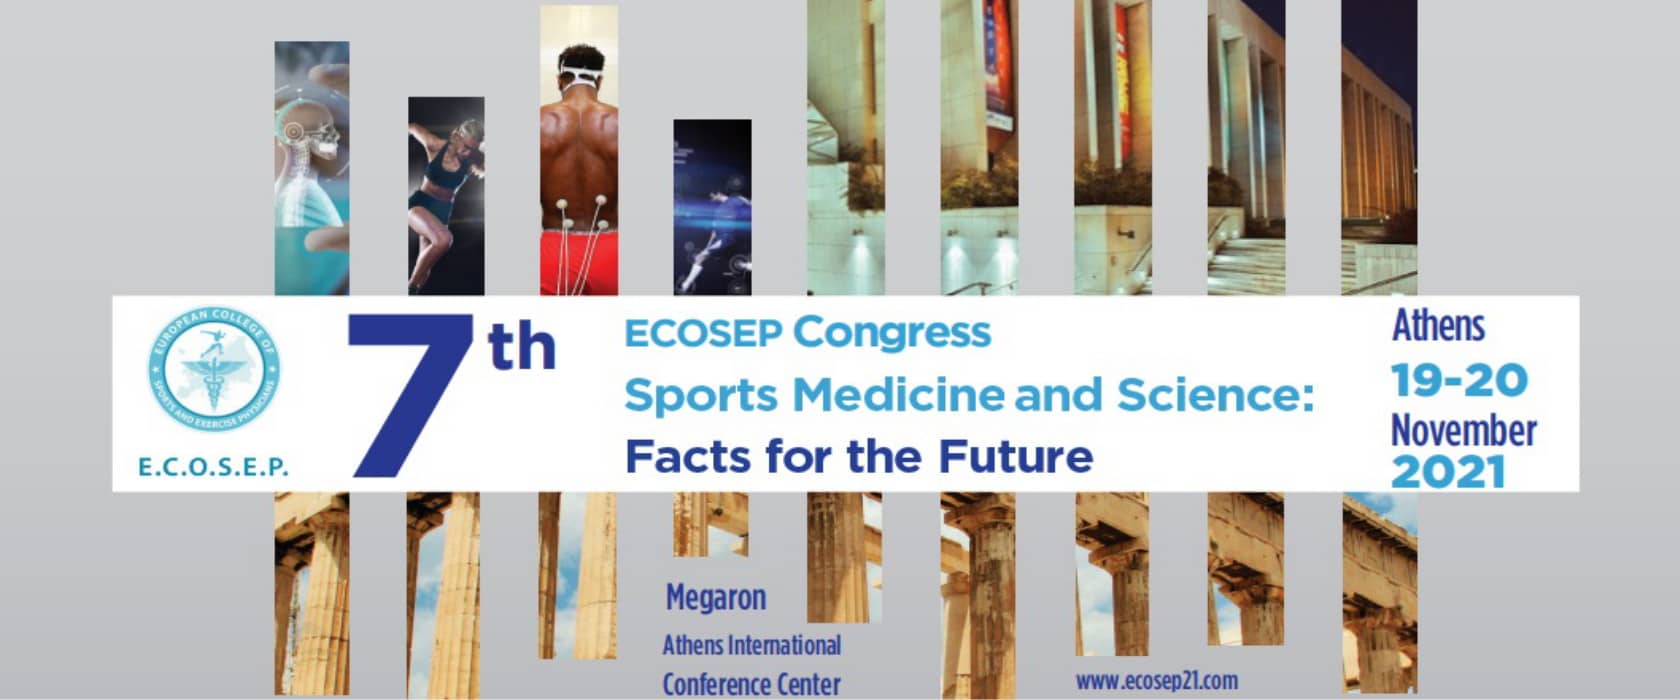 7th ECOSEP Congress